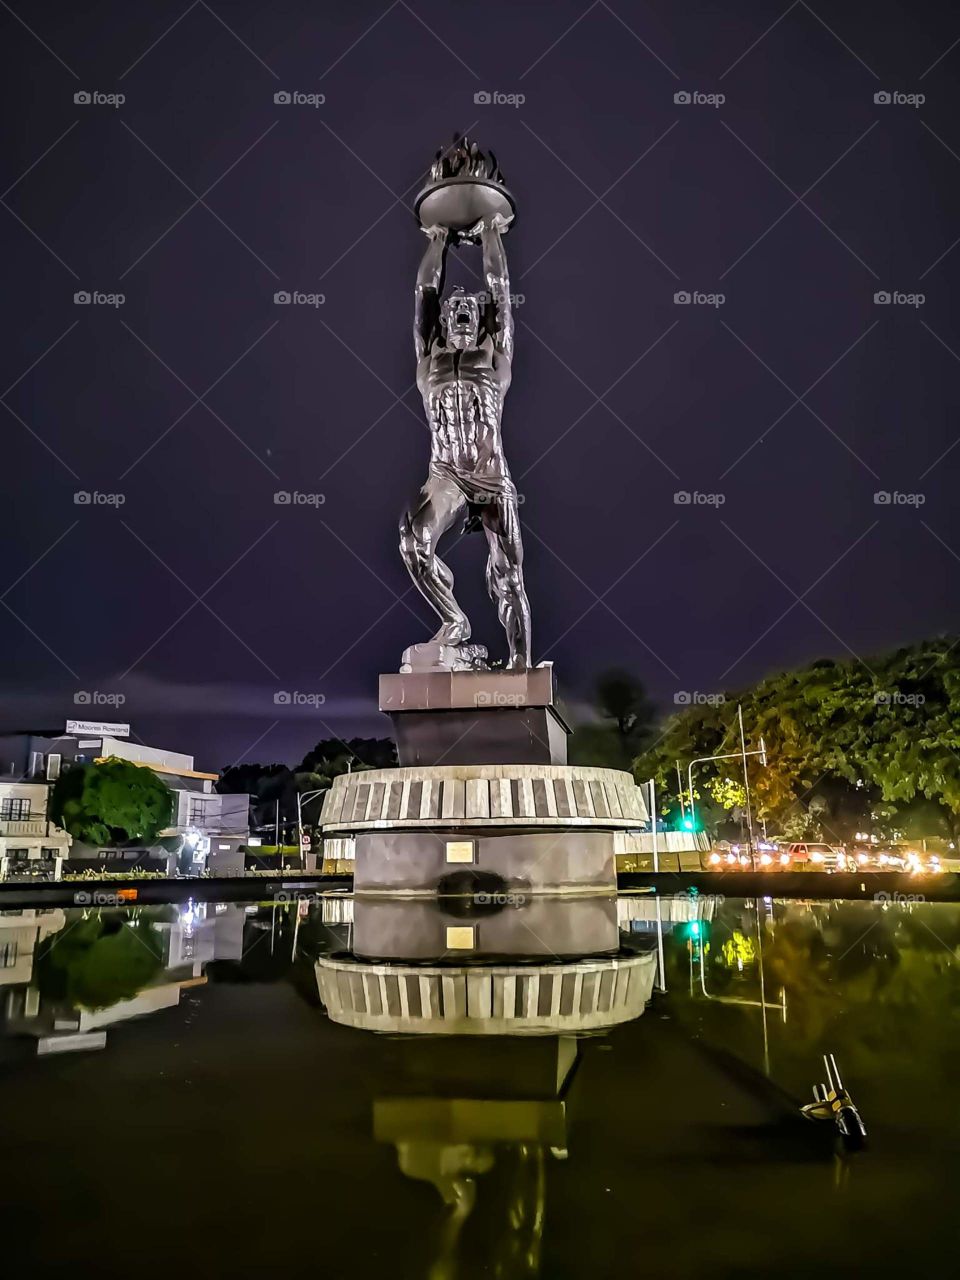 Jakarta Landmark